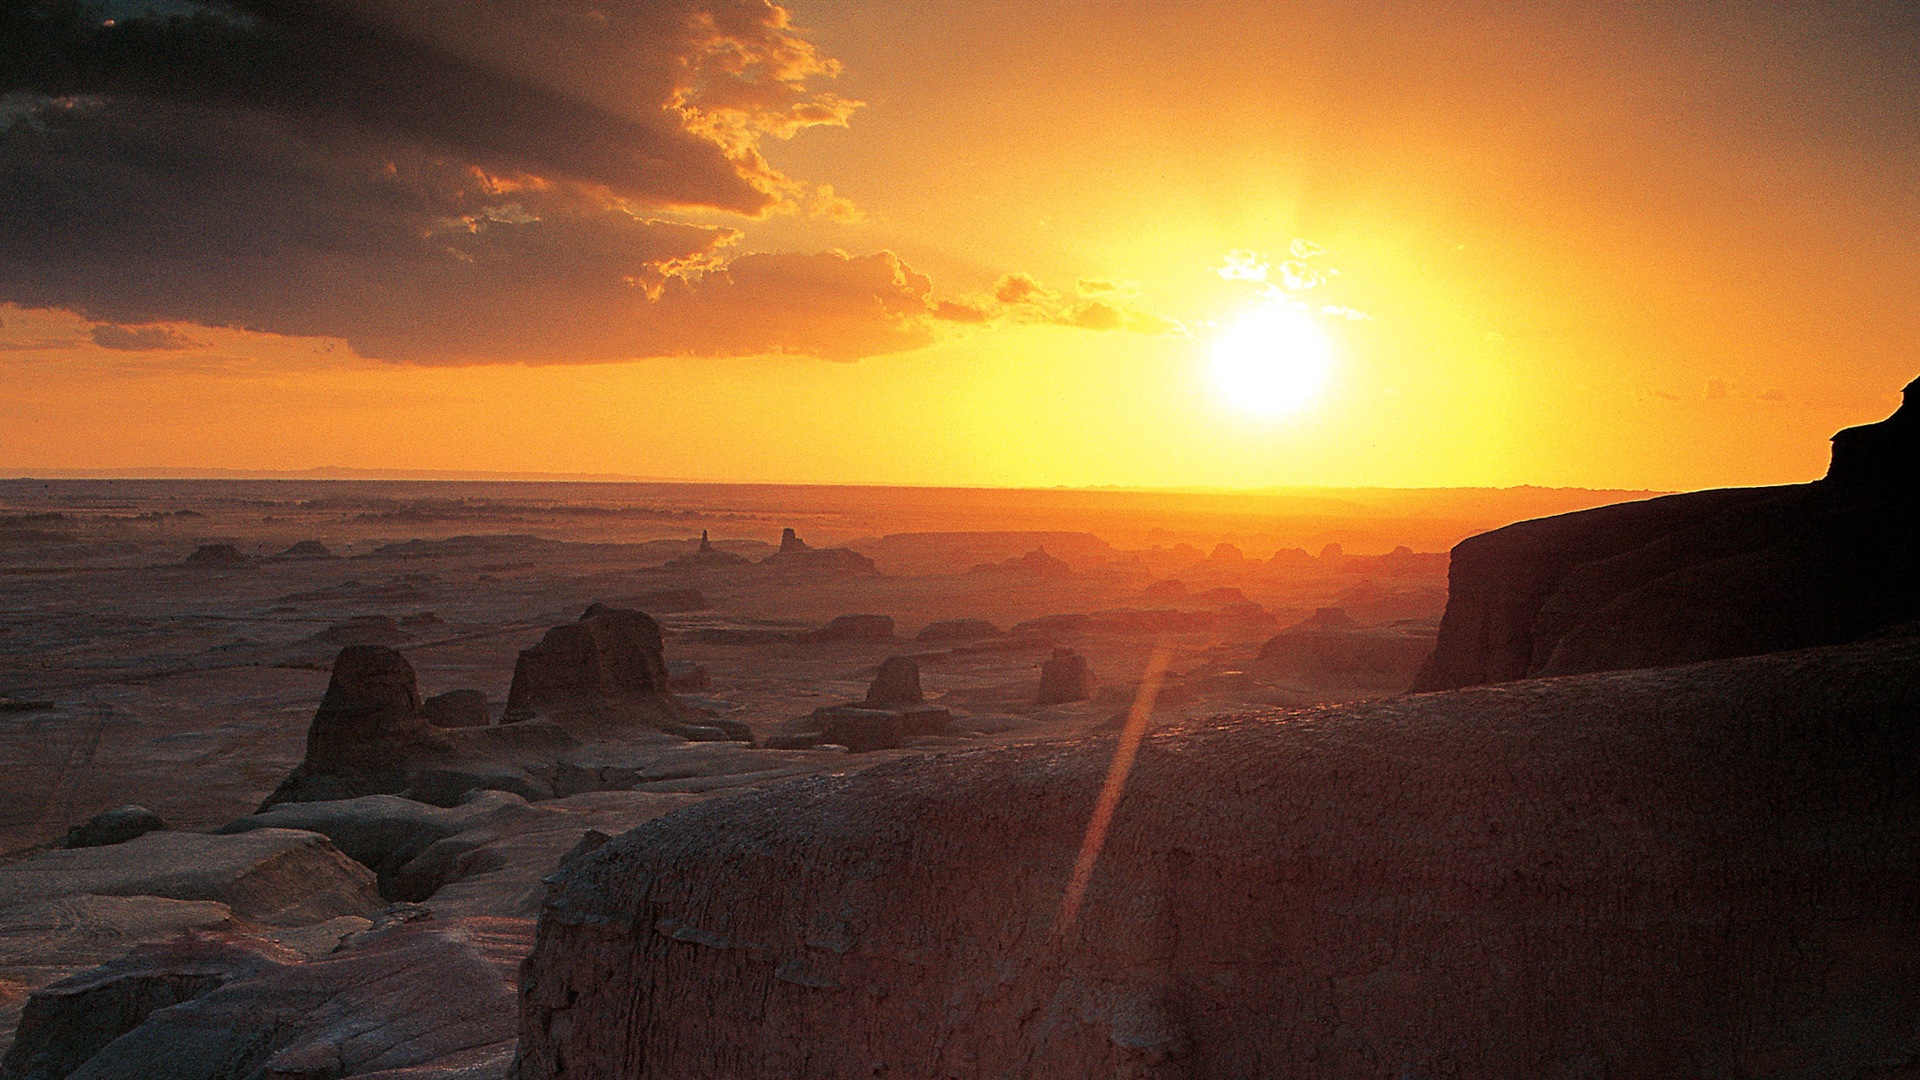 Les déserts chauds et arides, de Windows 8 fonds d'écran widescreen panoramique #12 - 1920x1080